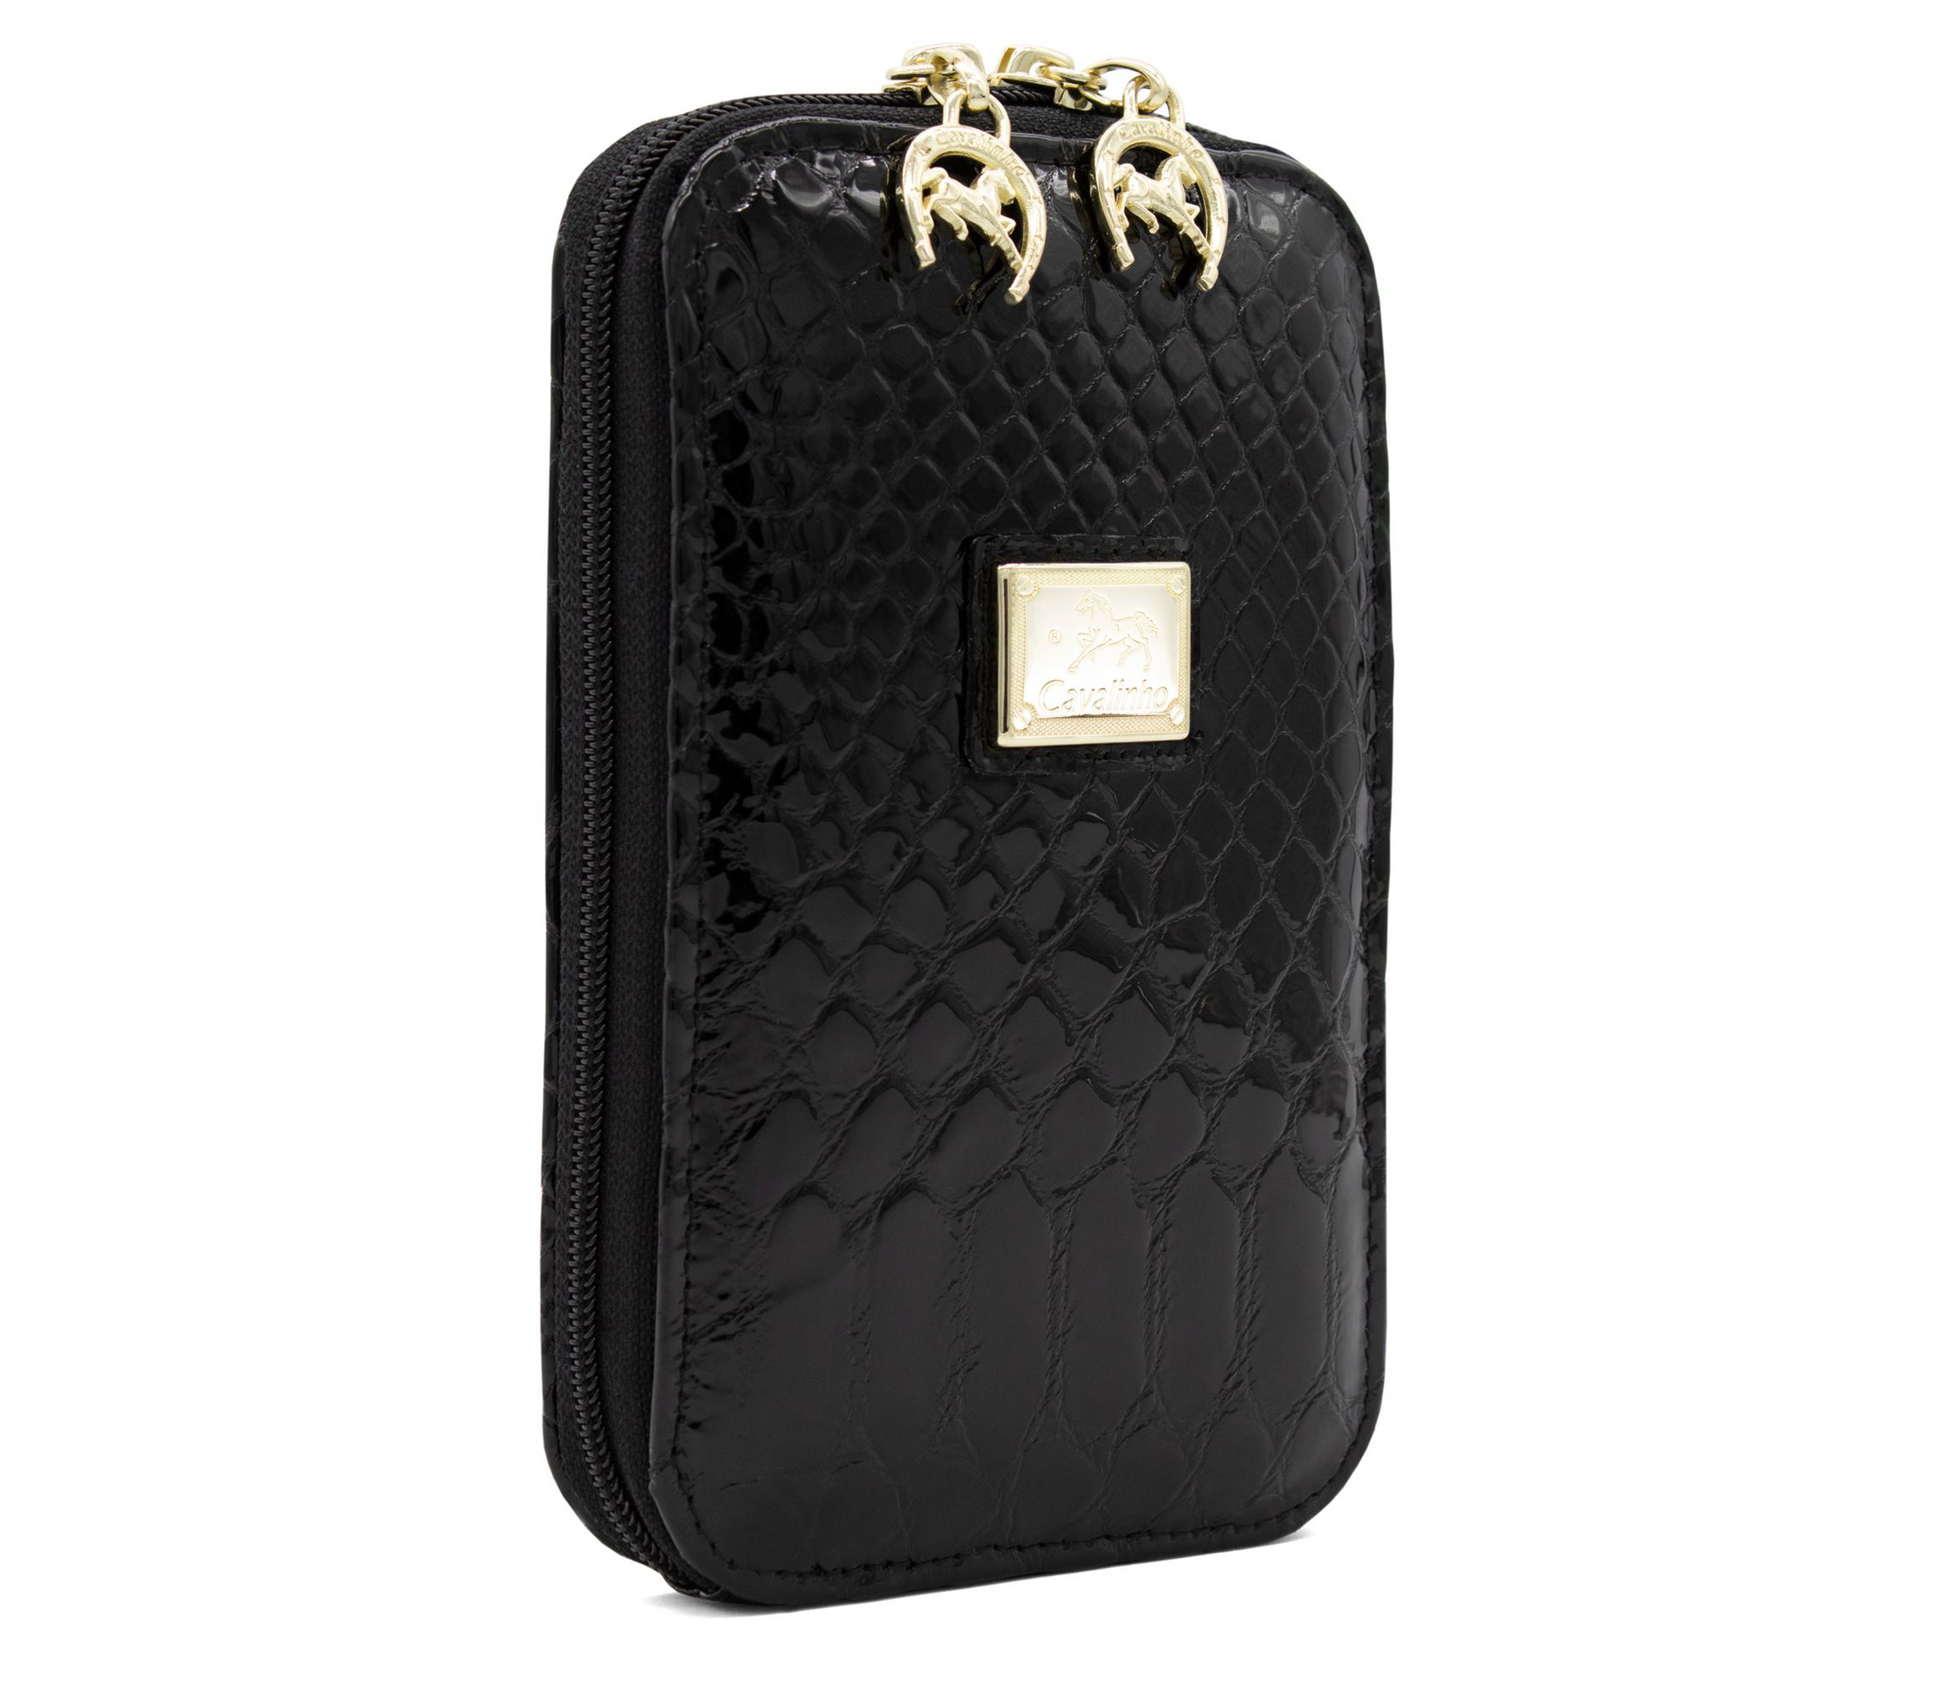 #color_ Black | Cavalinho Gallop Patent Leather Phone Purse - Black - Artboard5